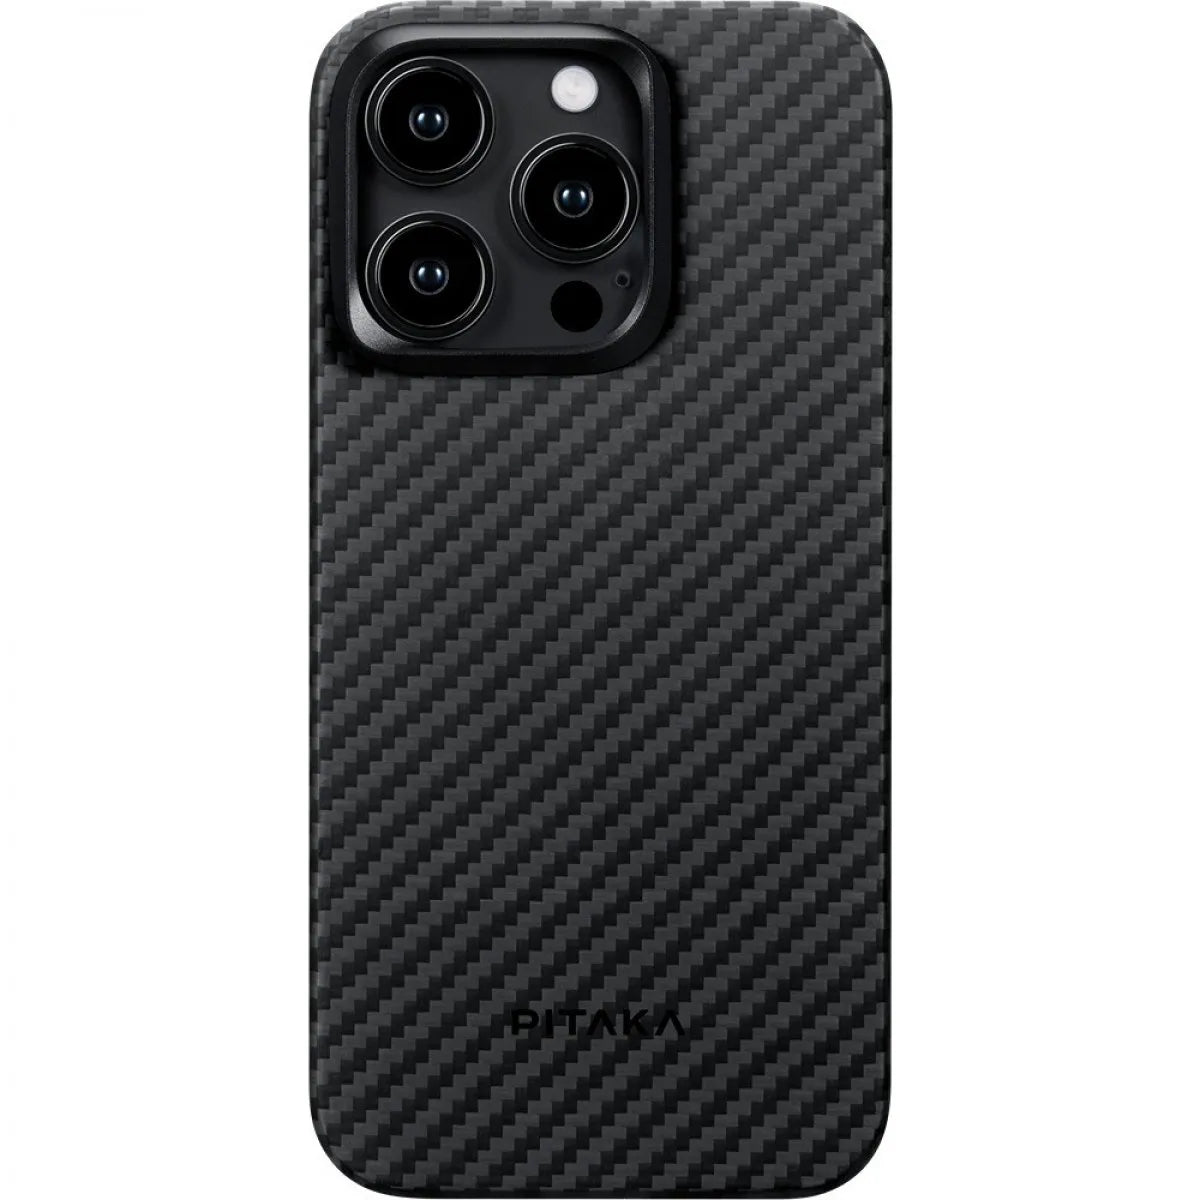 Pitaka iPhone 15 Pro MagEZ Case 4